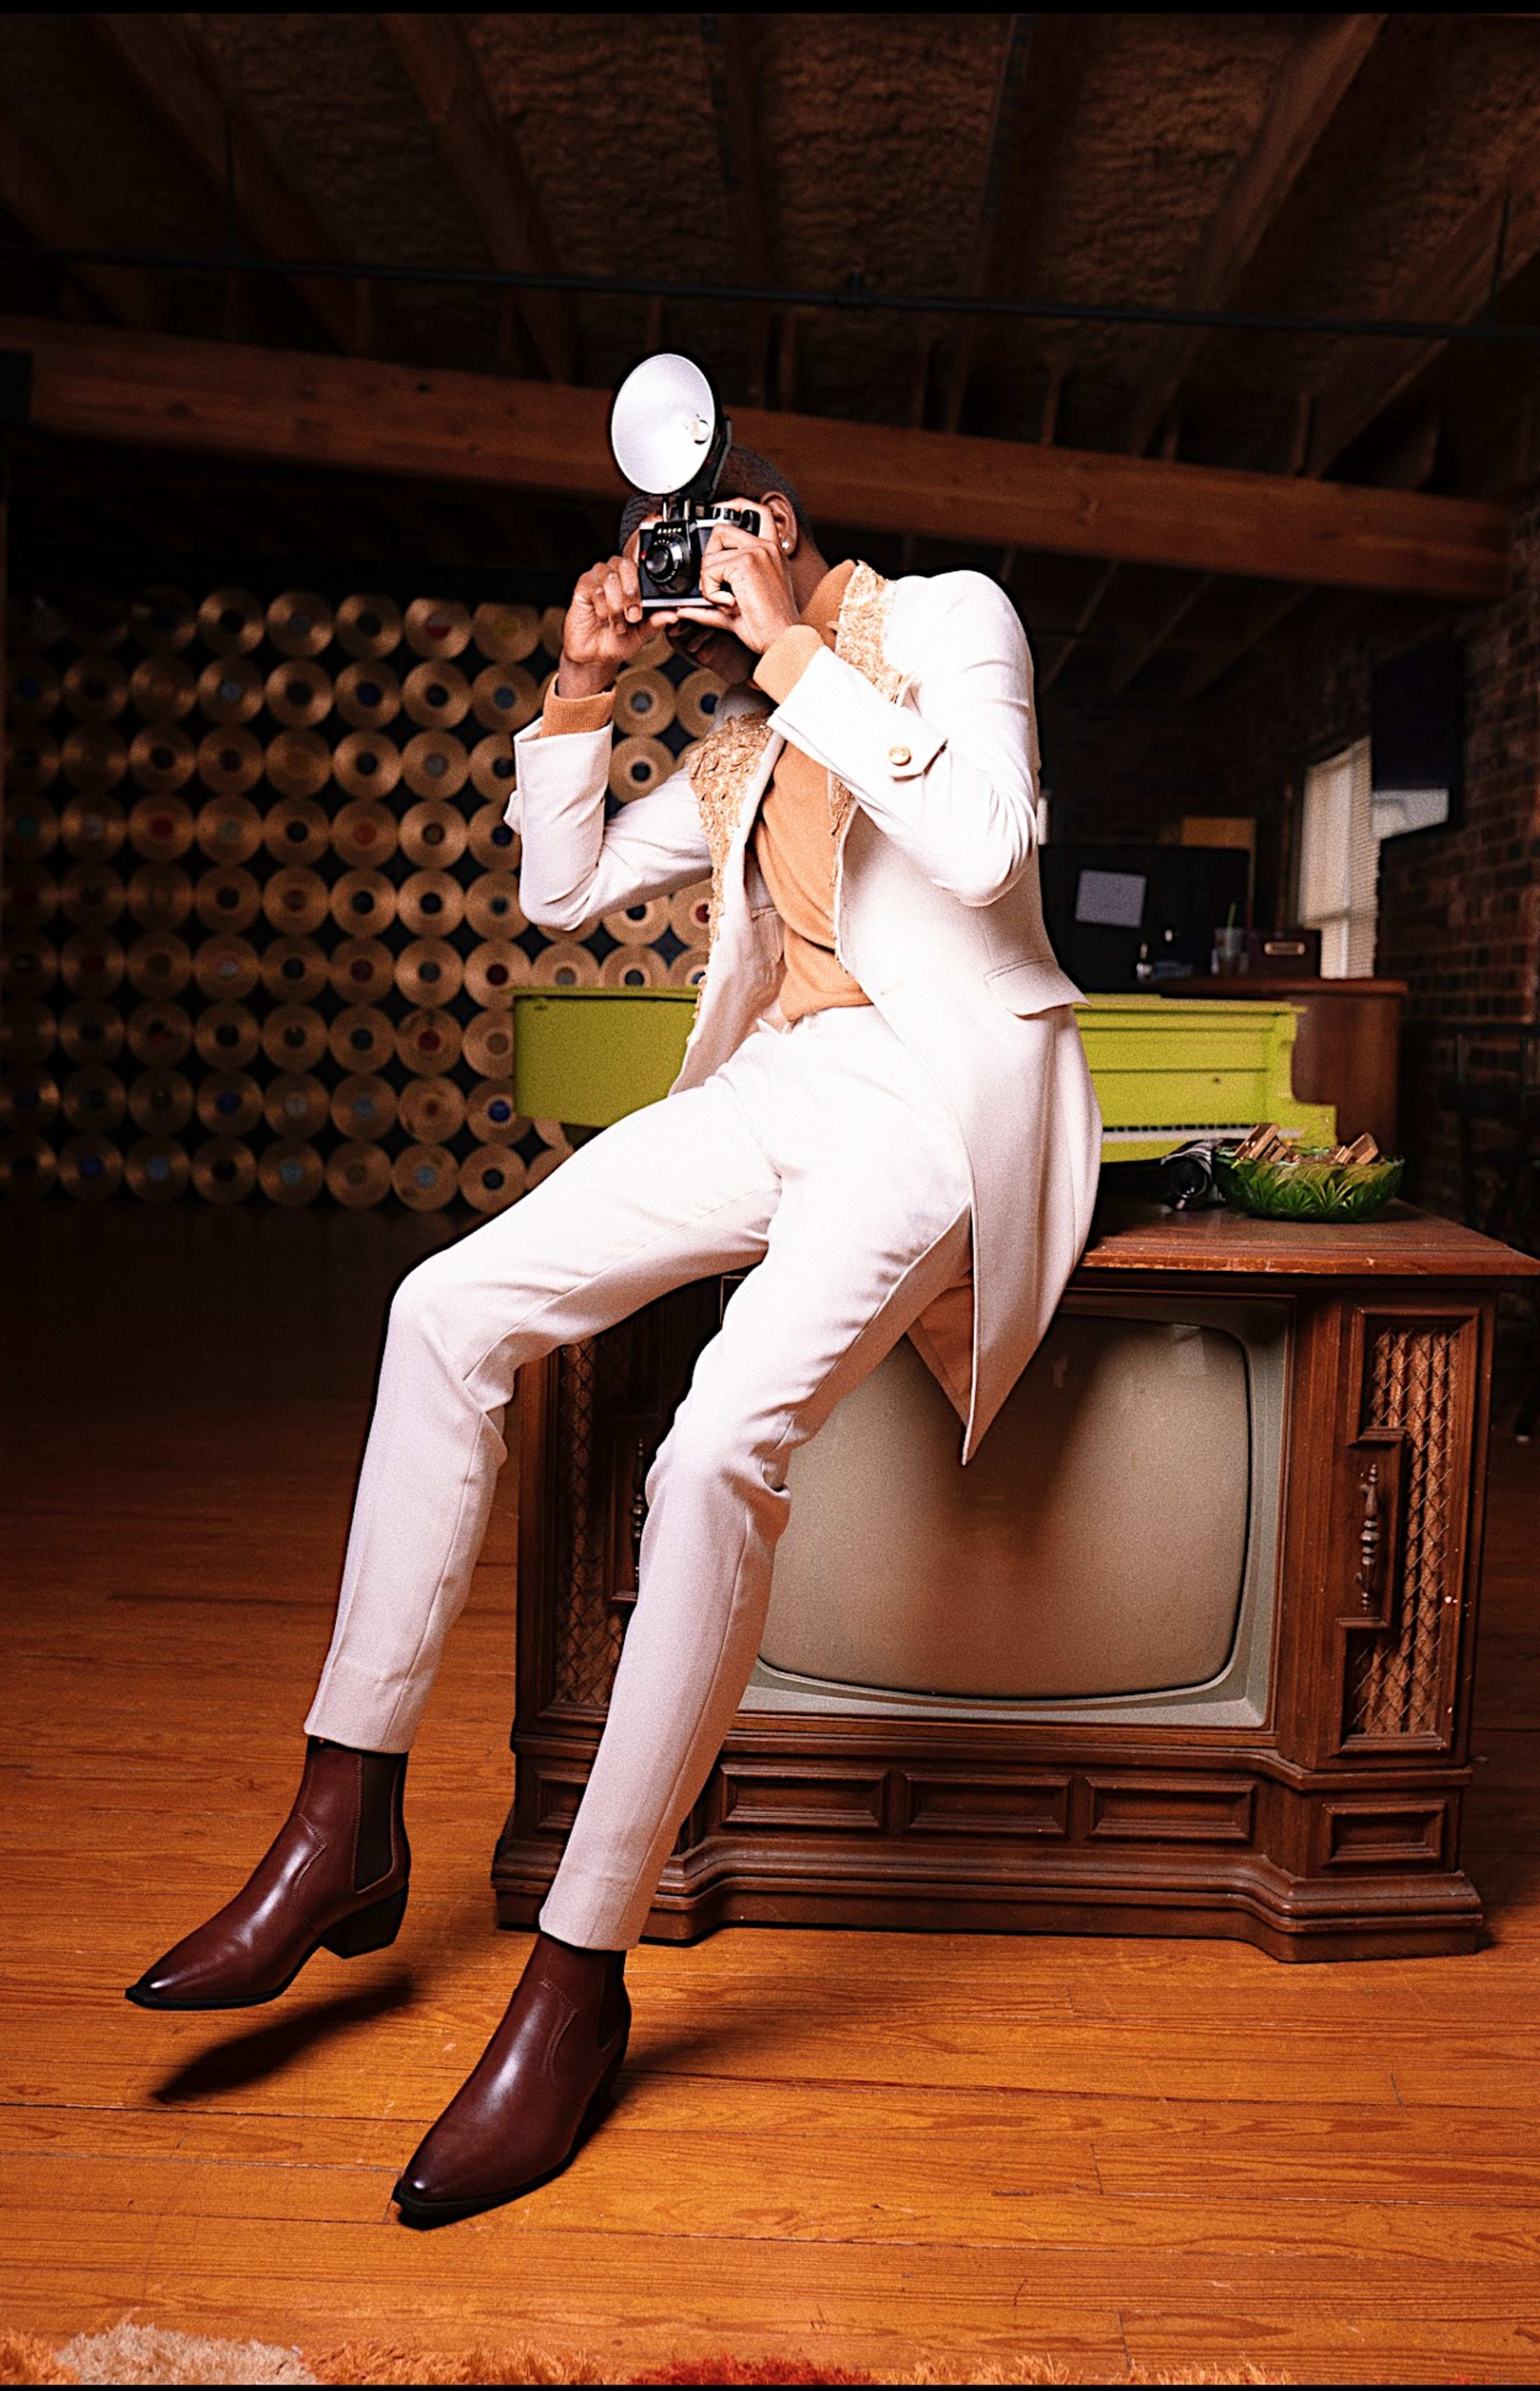 Un homme en costume blanc posant sur un téléviseur marron lors d'un shooting photo rétro.